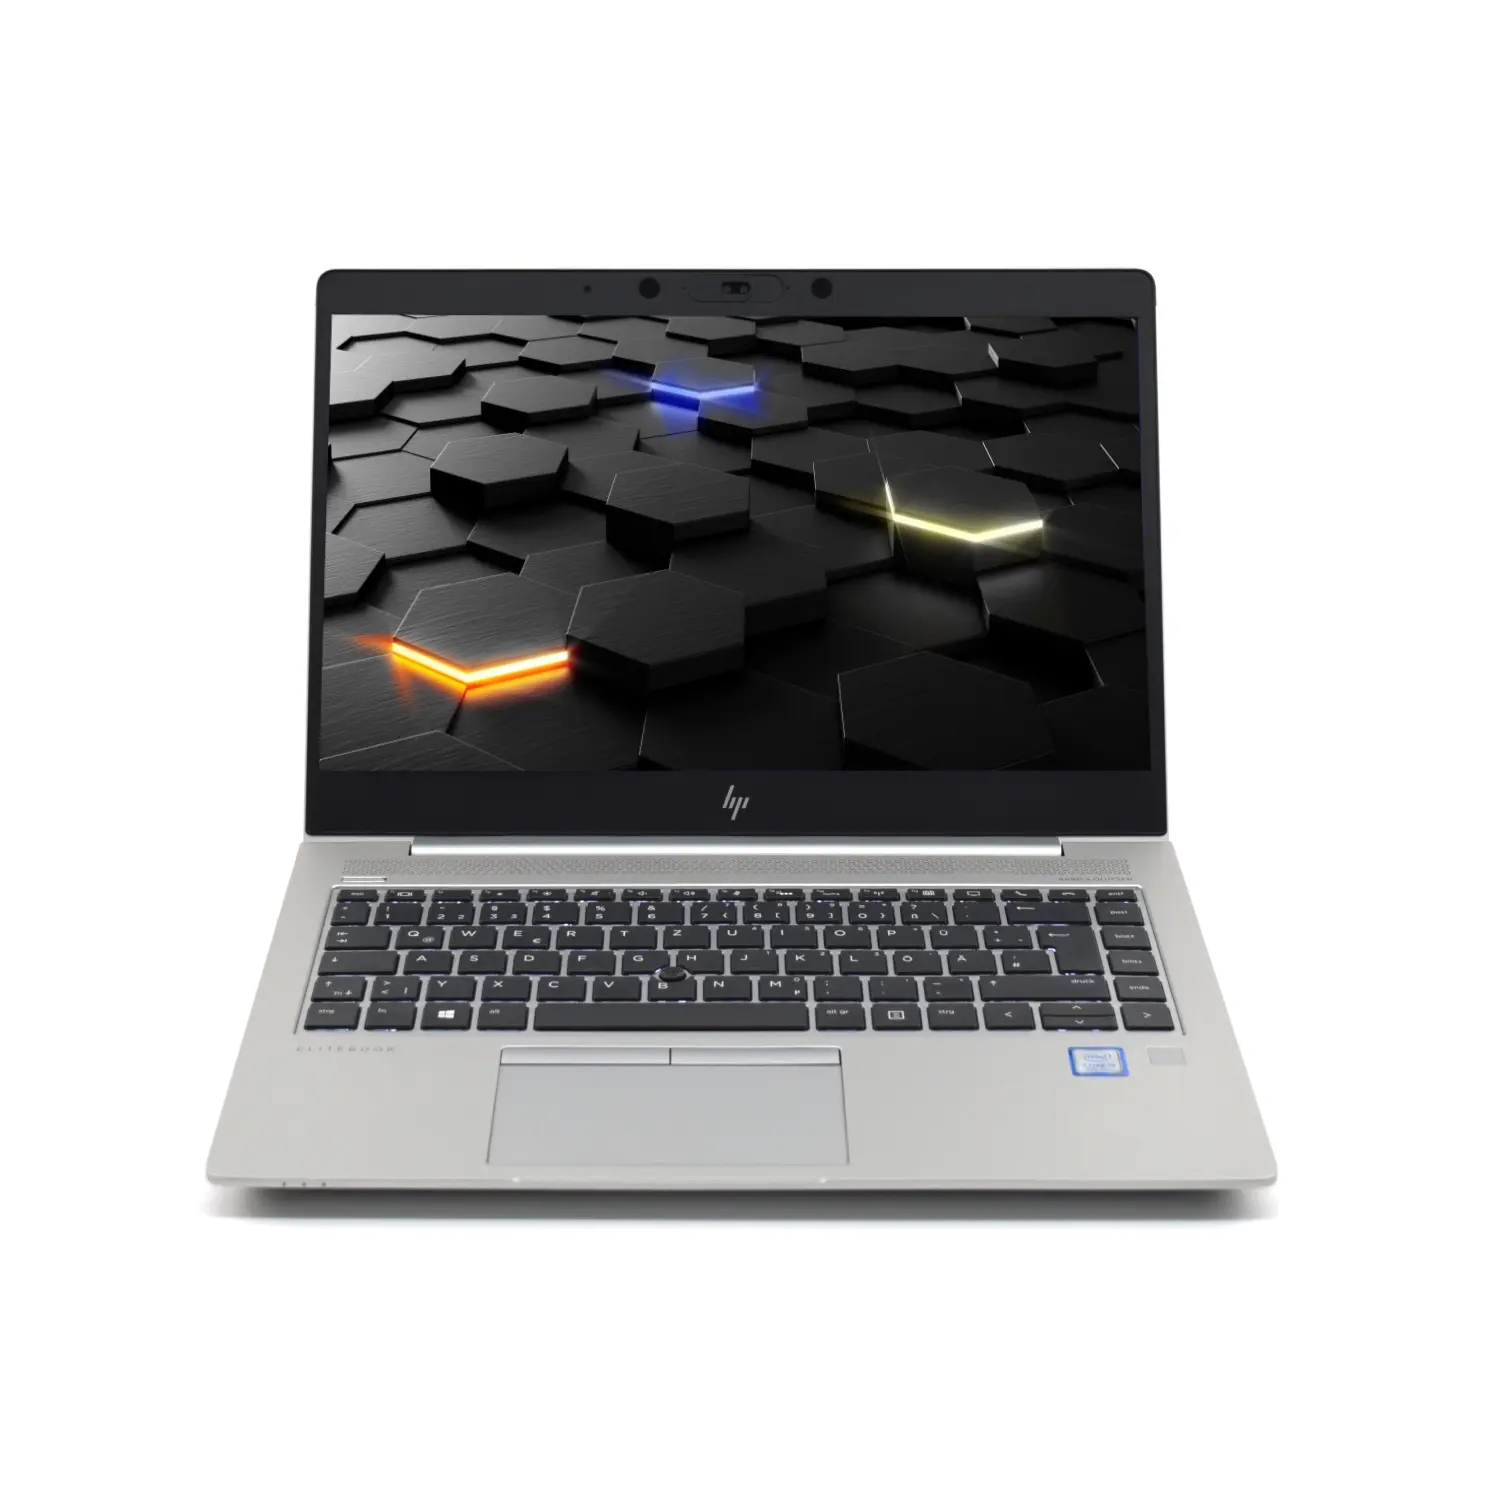 HP EliteBook 840 G5 i5 (8.Gen) FHD IPS, 32GB, 500GB NVMe, mit LTE,  beleuchtete Tastatur, Webcam, Windows 10 Pro